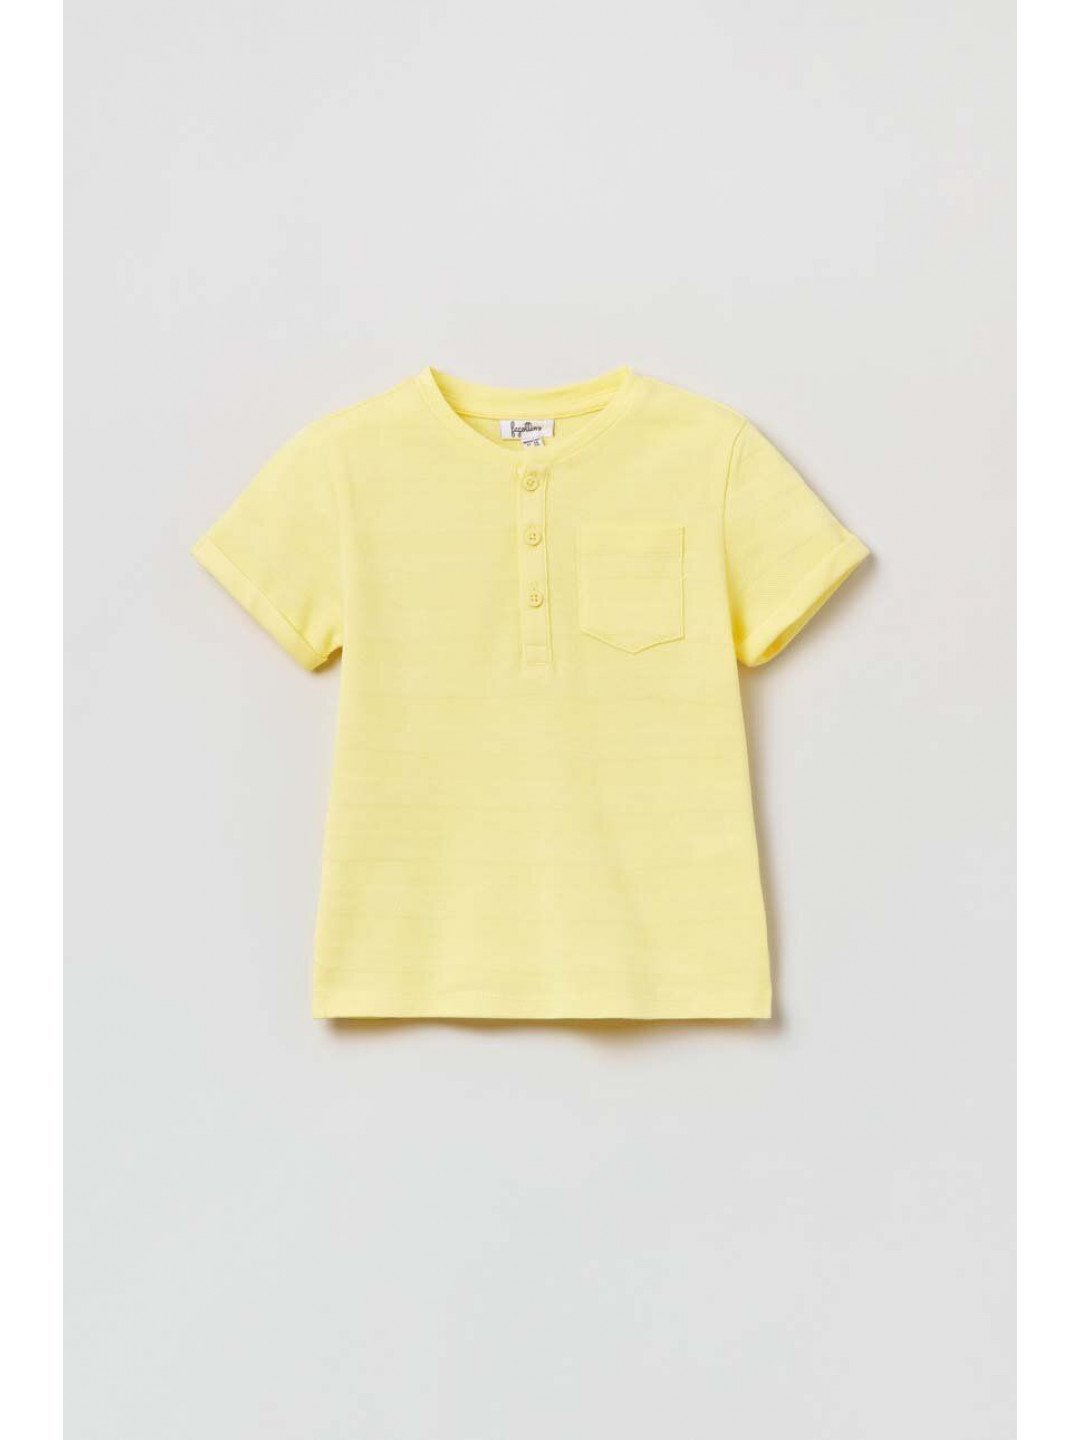 Bavlněné dětské tričko OVS žlutá barva